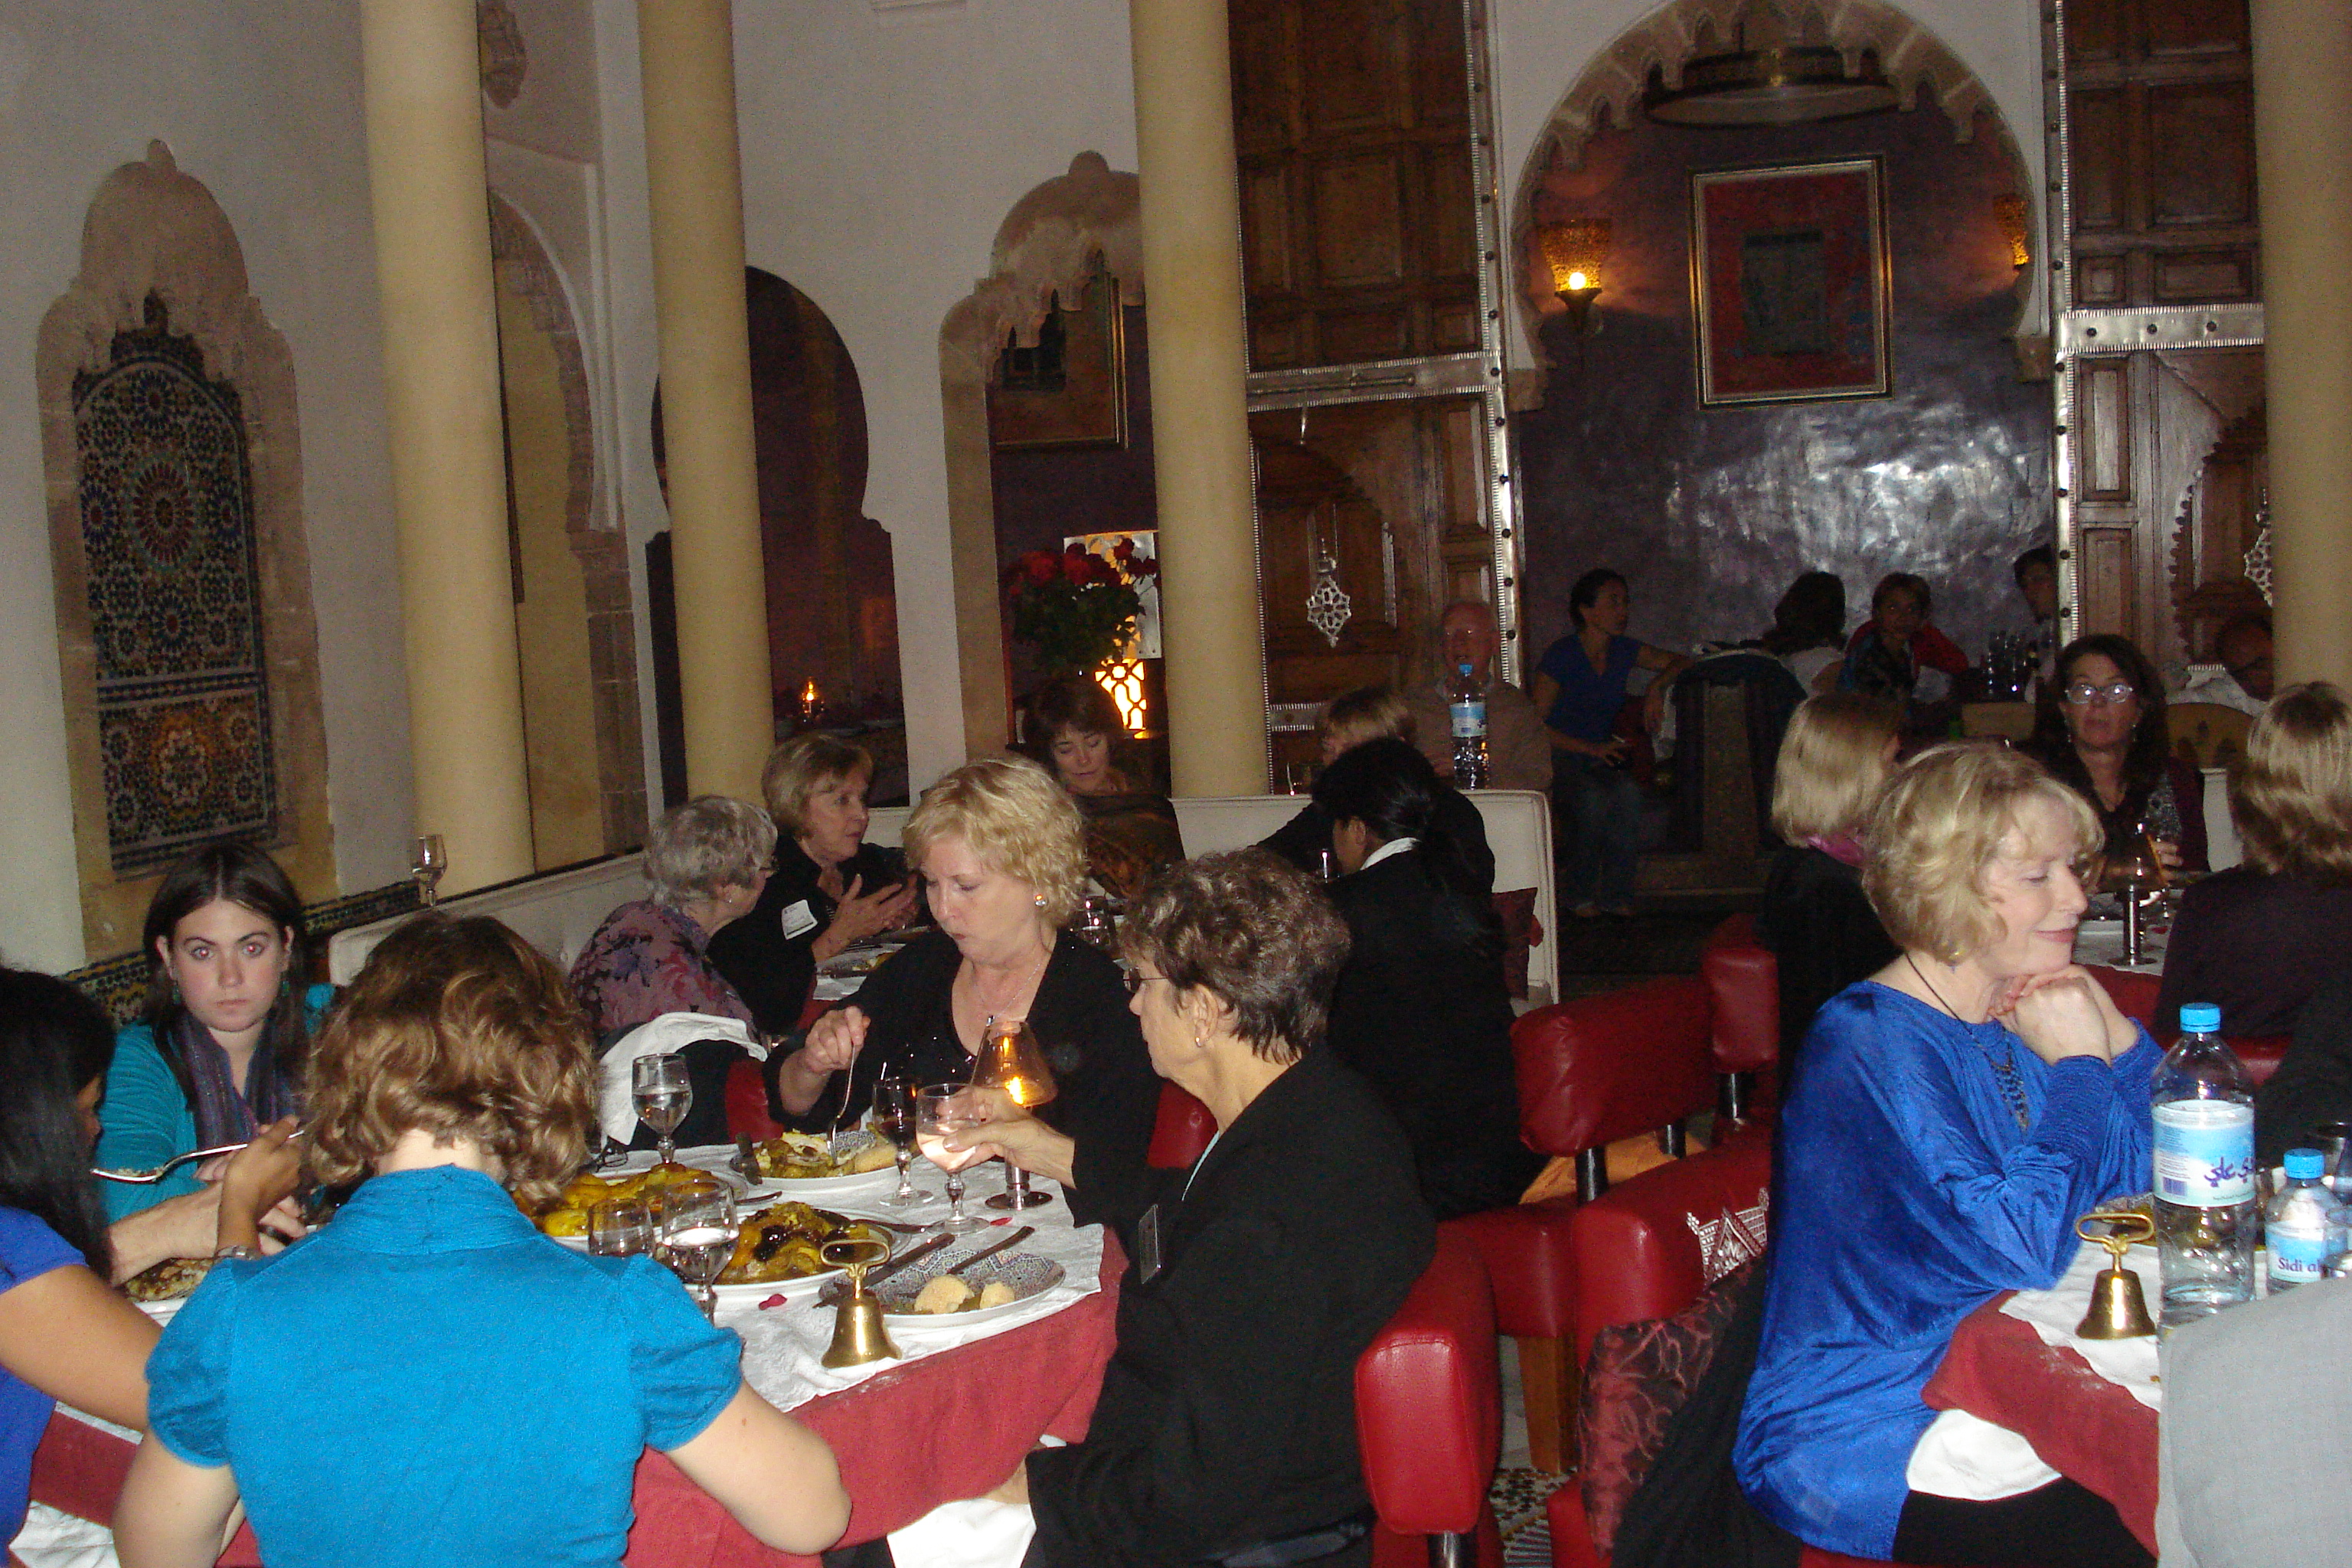 ... Center Â» Dinarjat restaurant- Rabat group orientation at 7pm (4